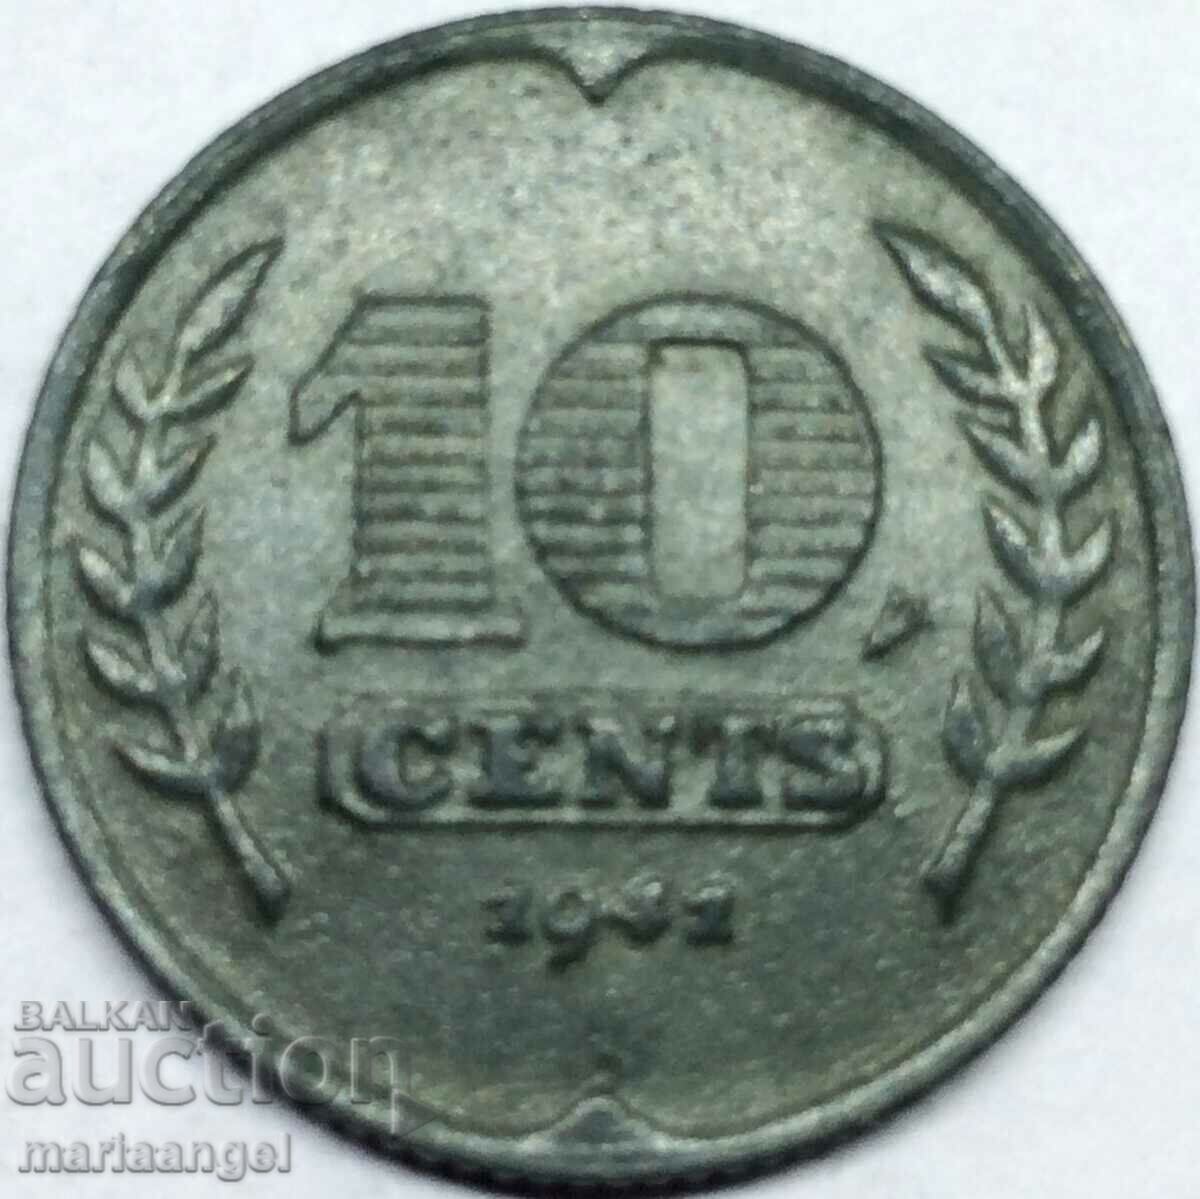 Netherlands 10 cents 1941 zinc - quite rare